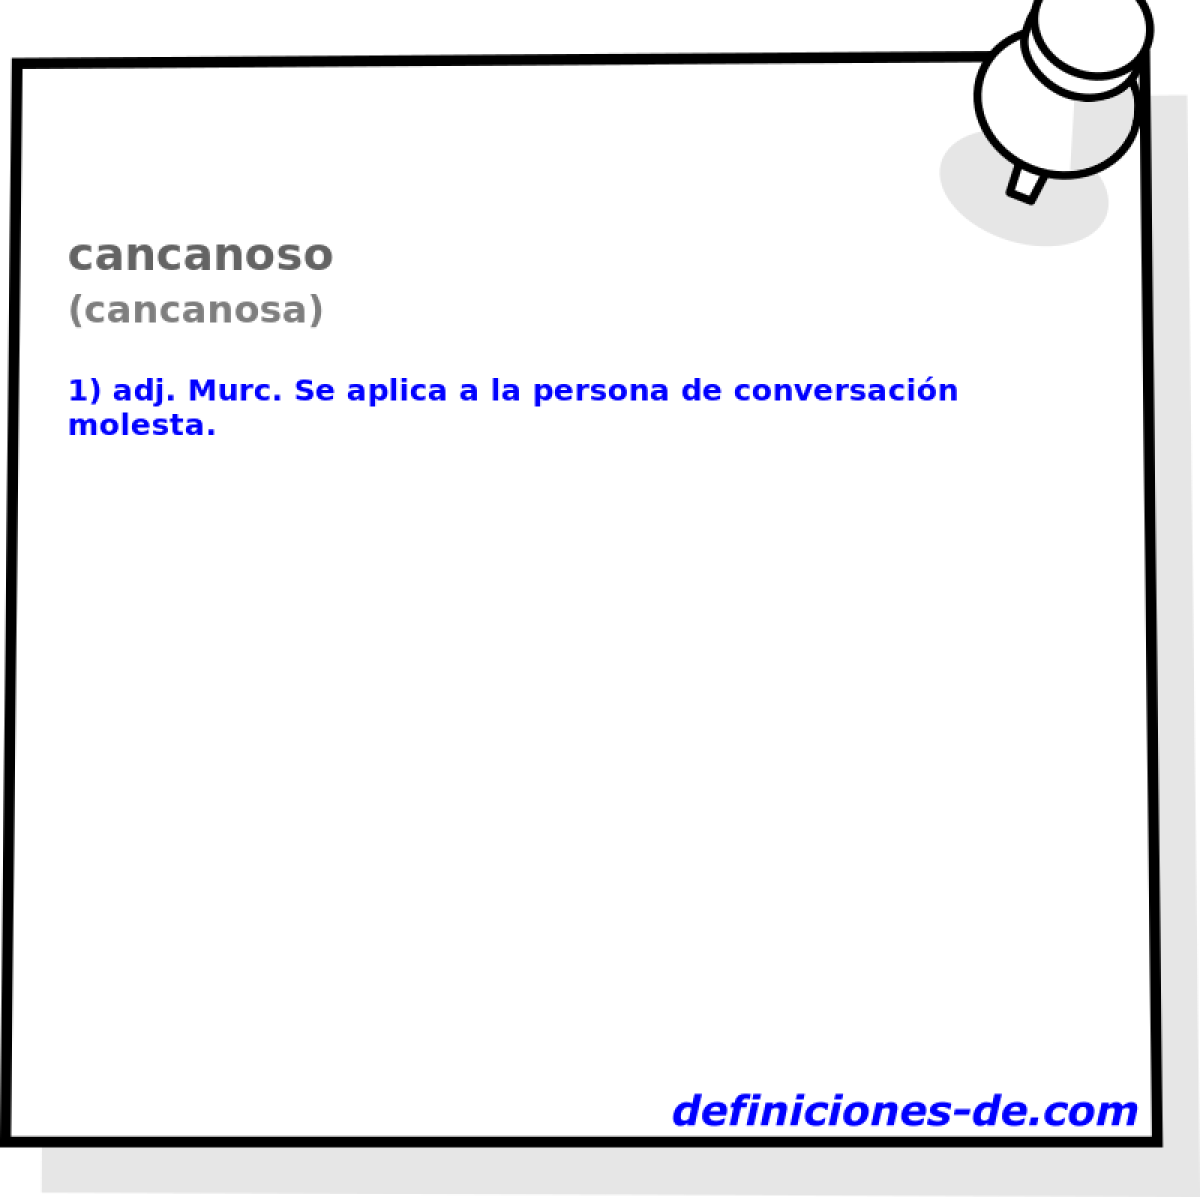 cancanoso (cancanosa)